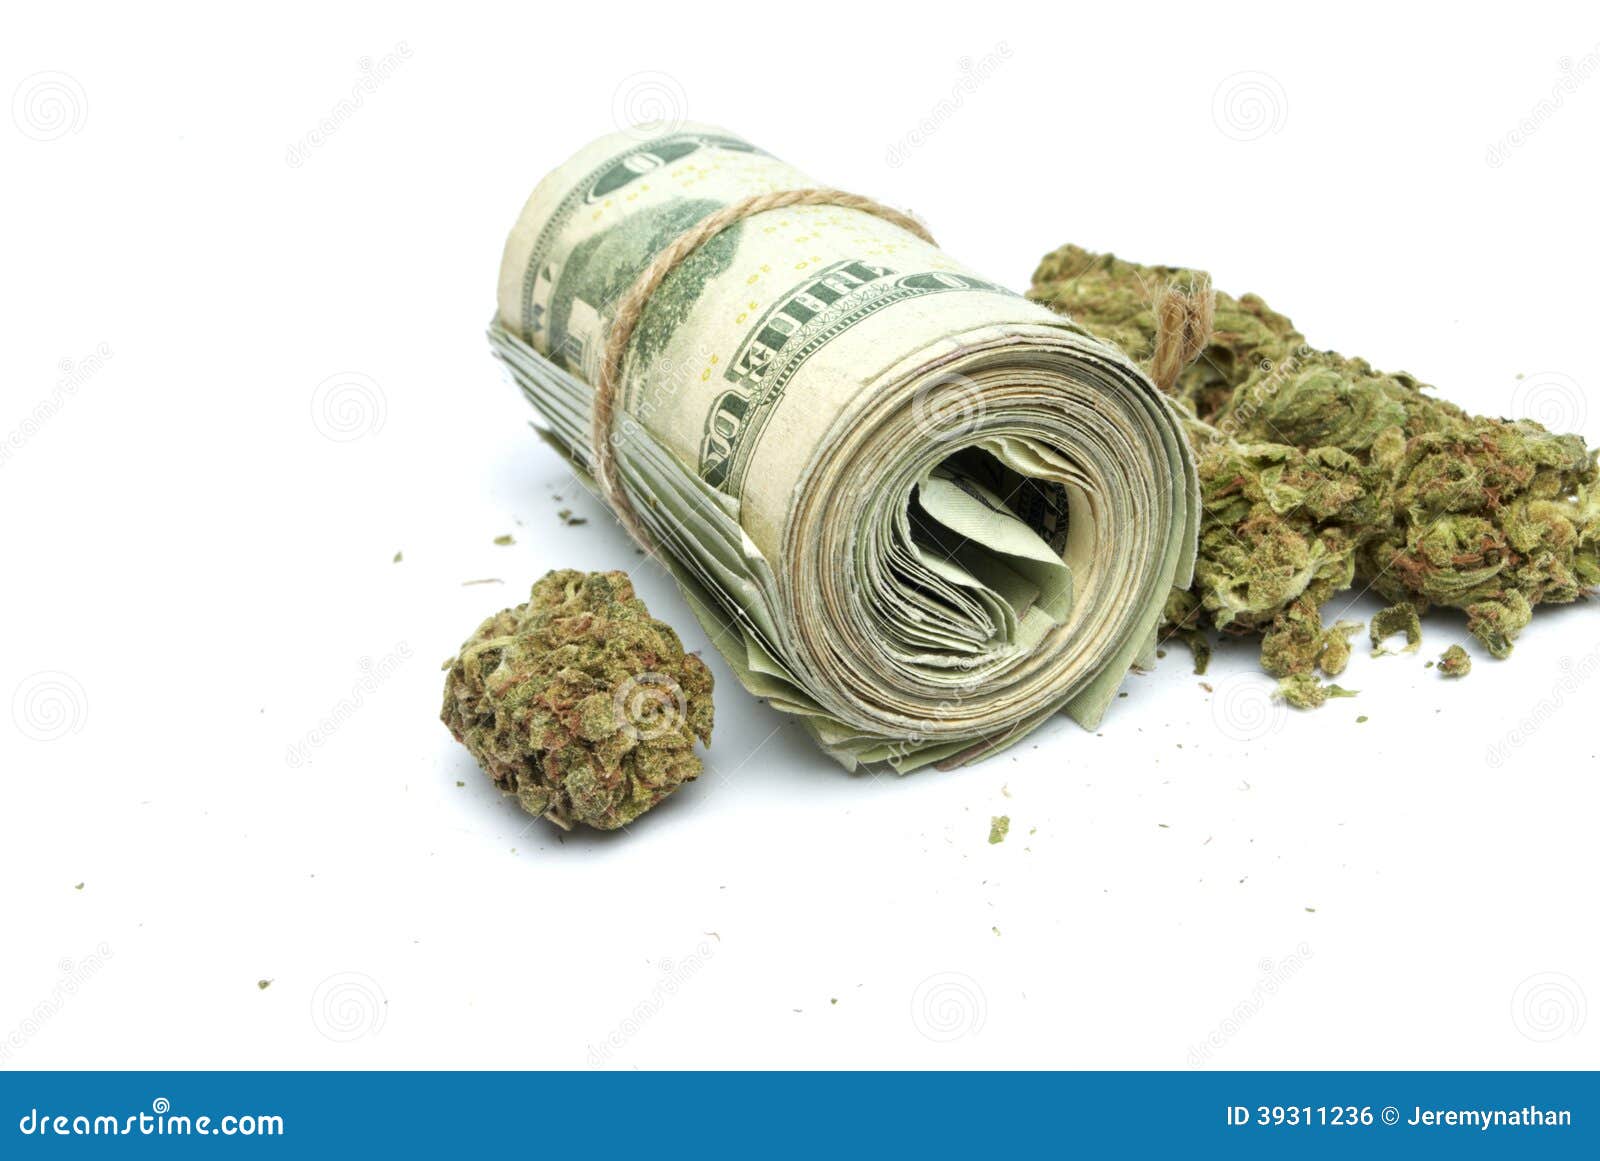 weed money wallpaper